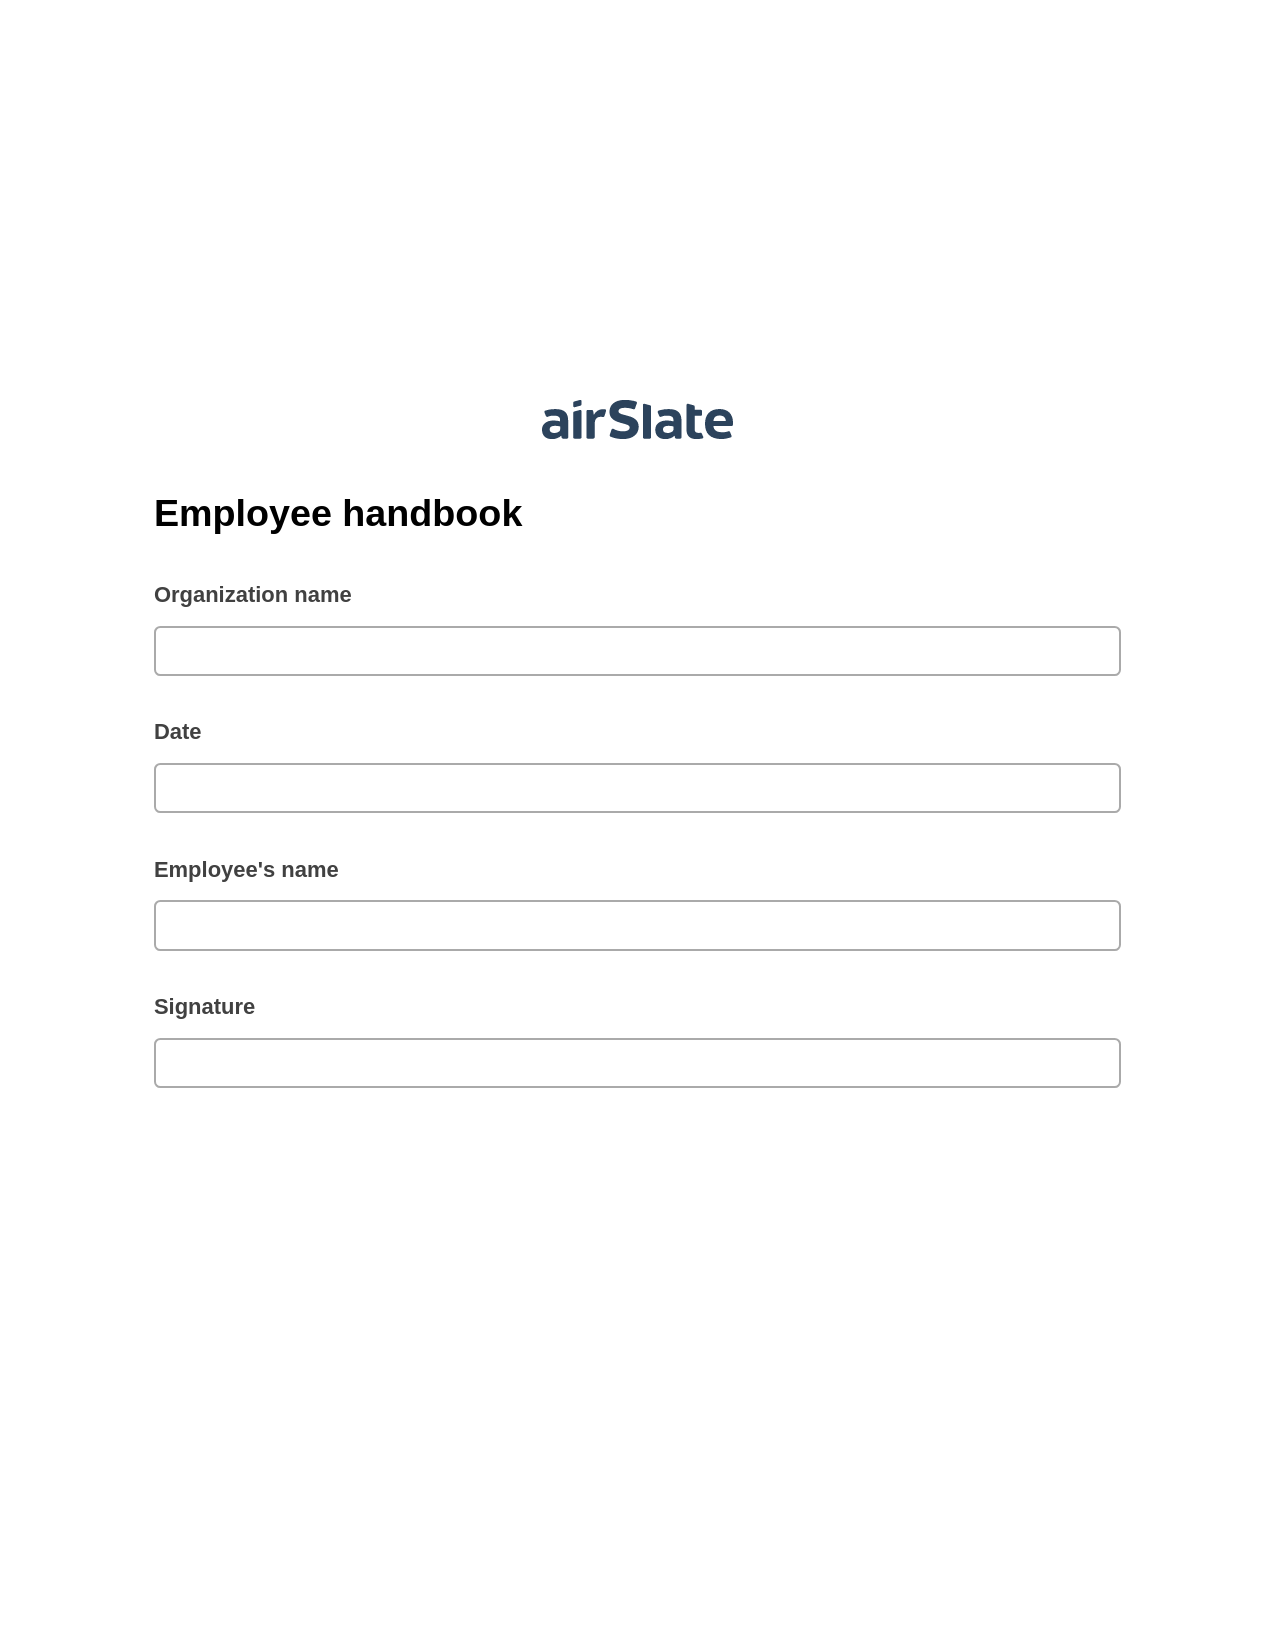 Multirole Employee handbook Pre-fill from another Slate Bot, Webhook Bot, OneDrive Bot